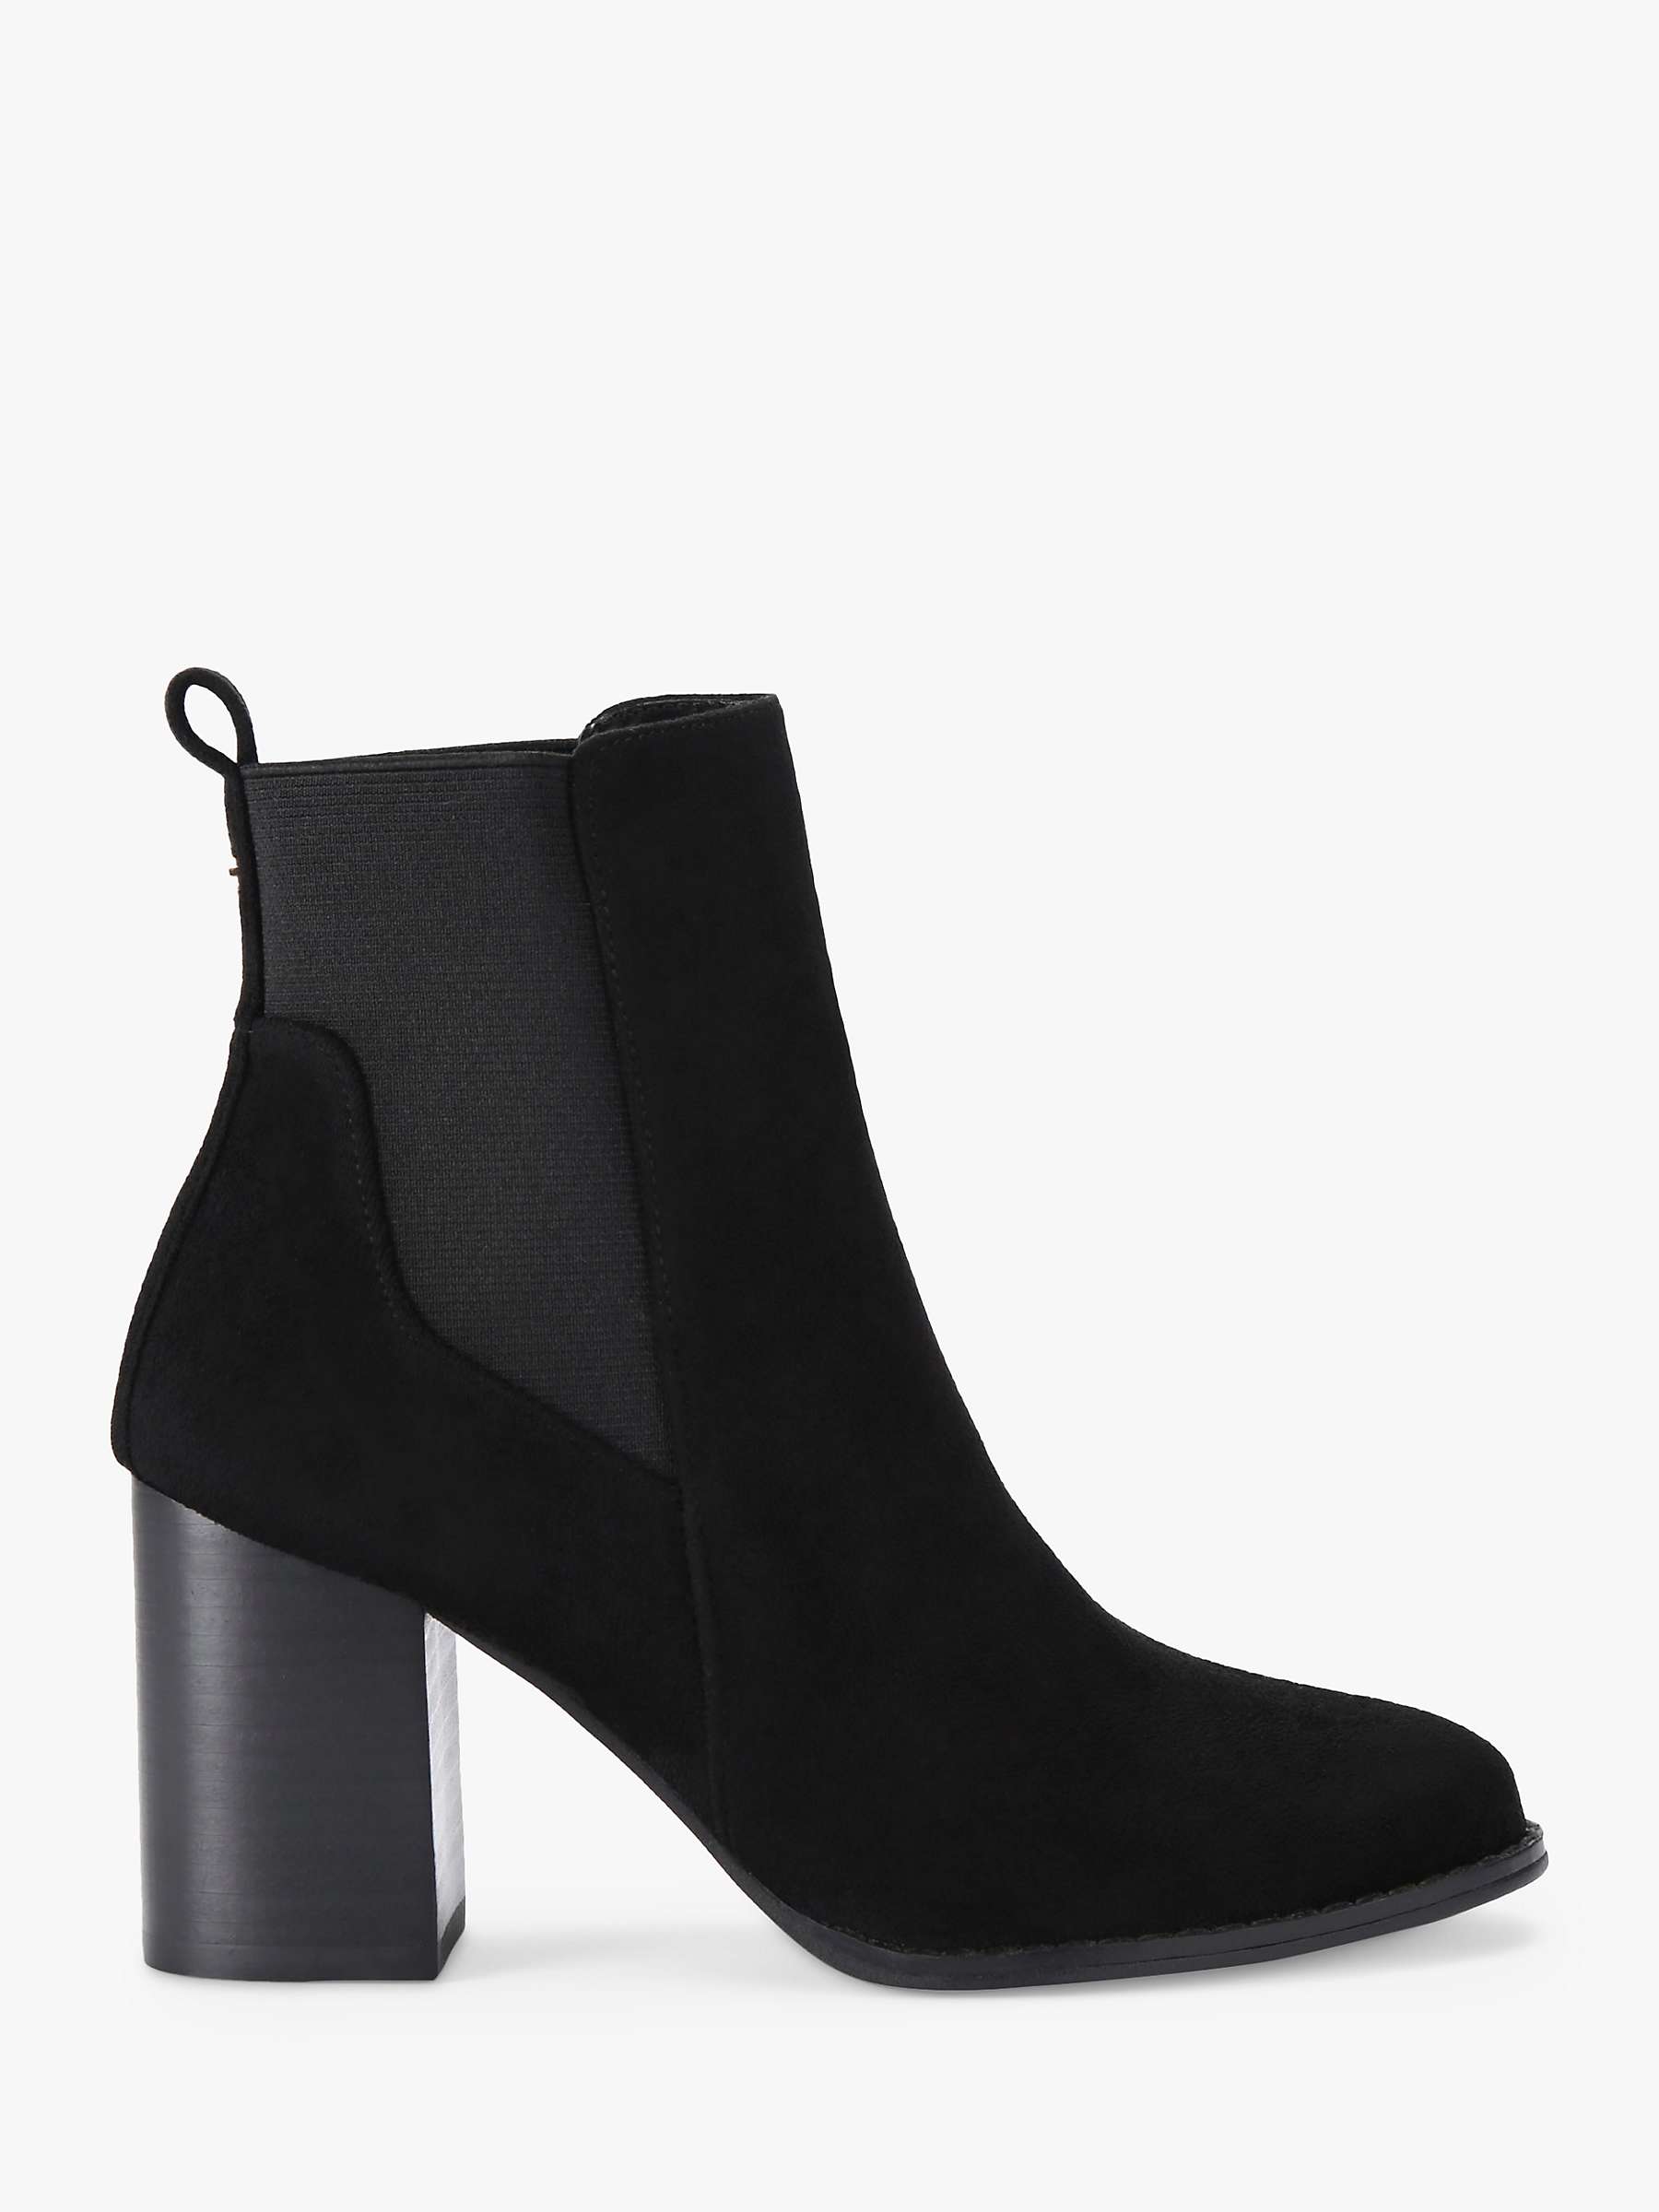 Buy Carvela Toodle Block Heel Chelsea Boots, Black Online at johnlewis.com